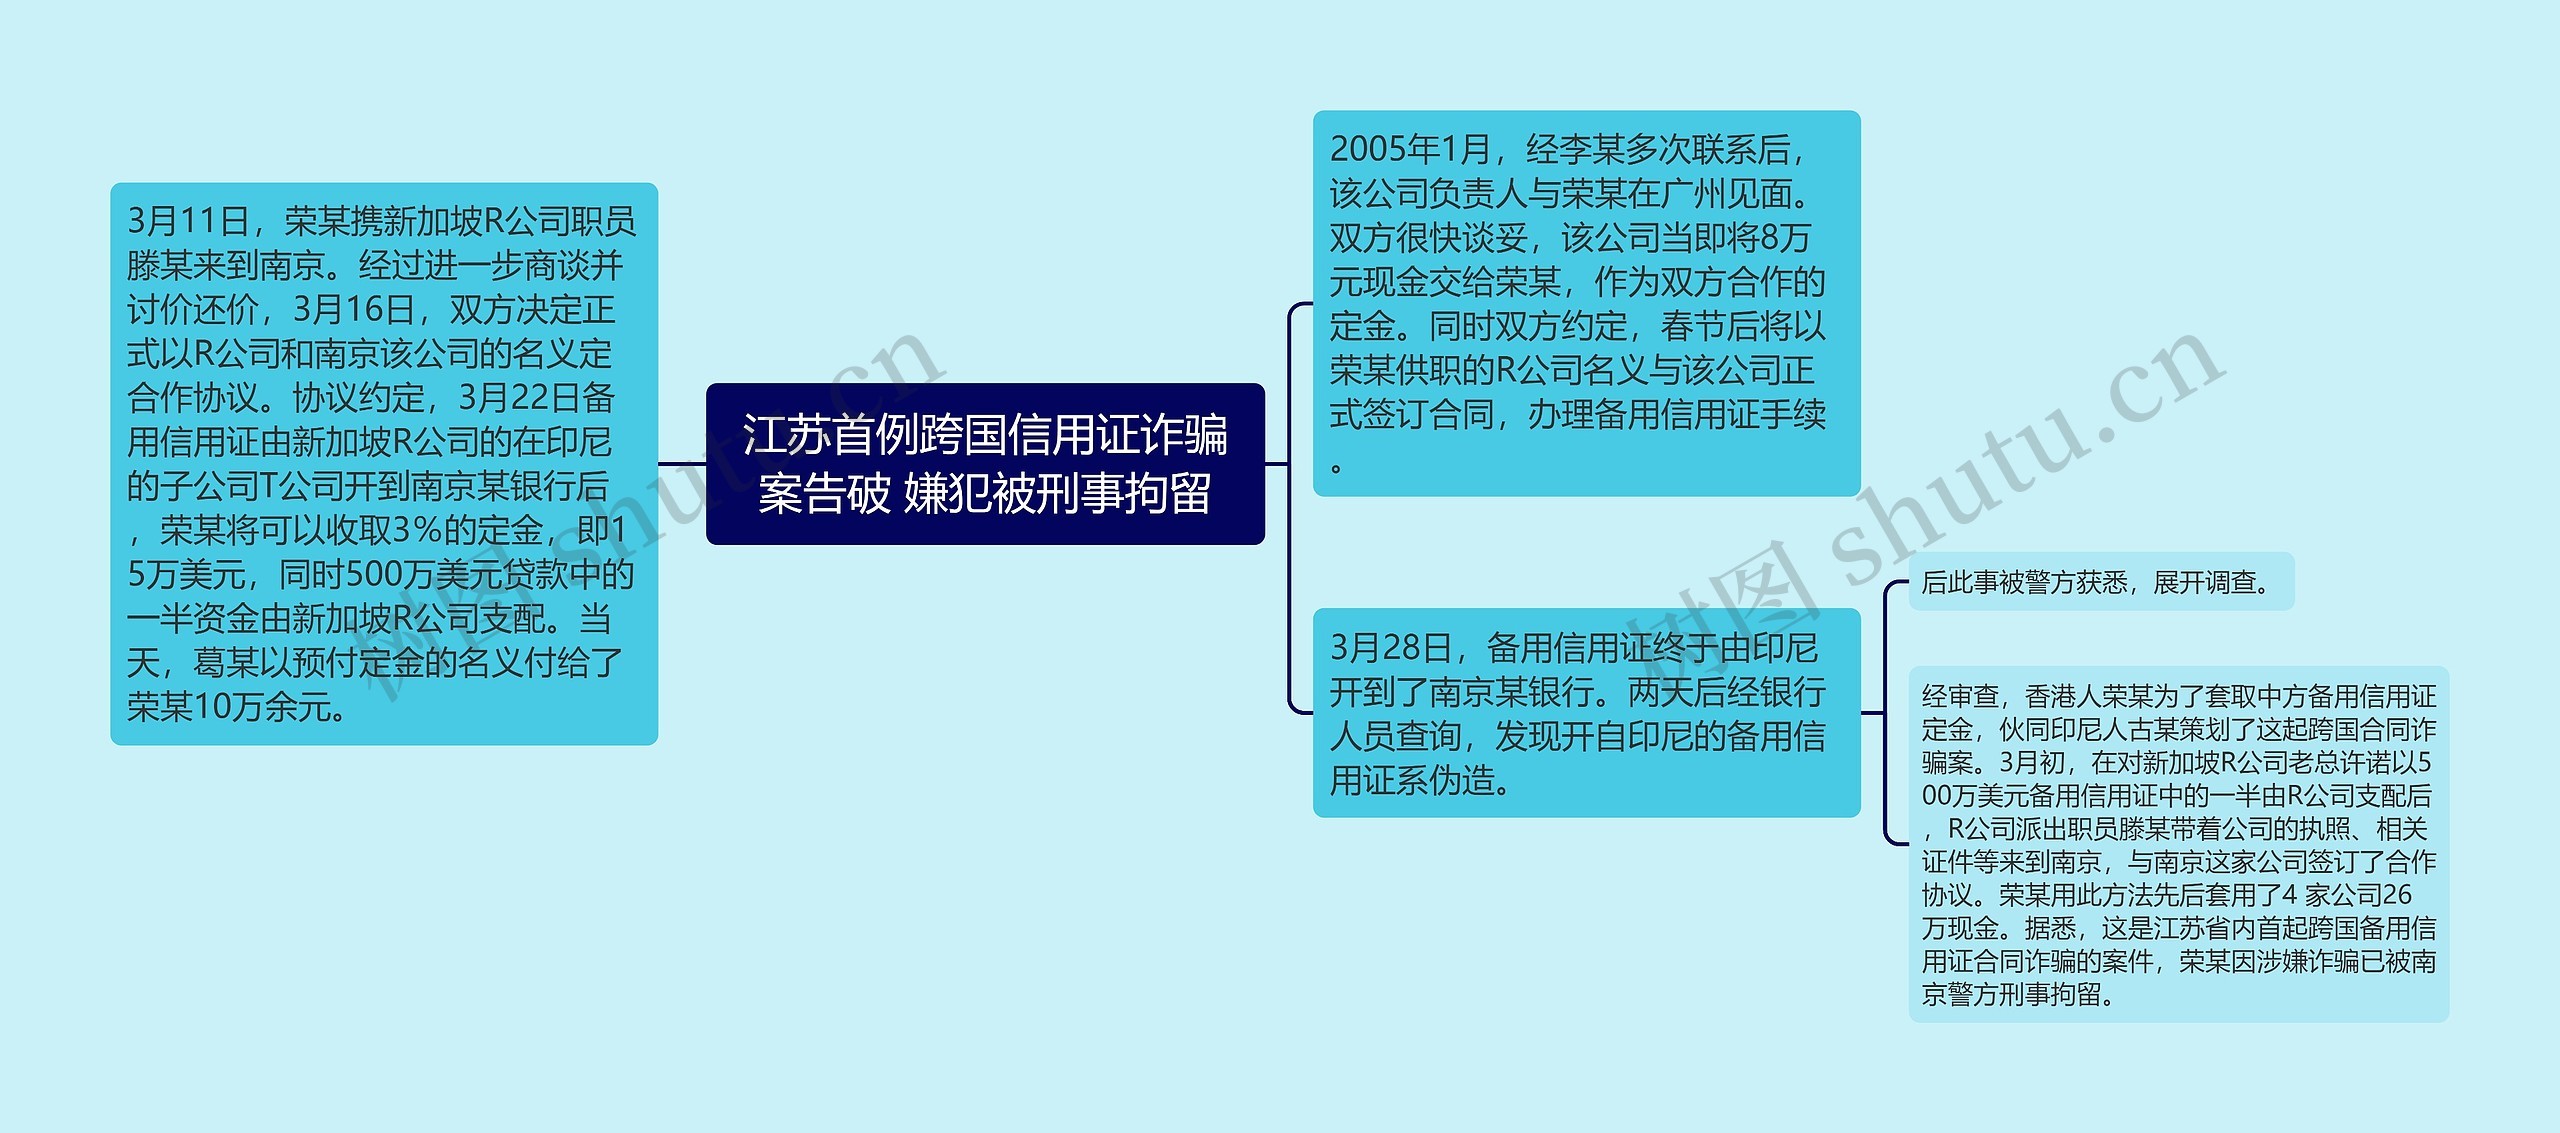 江苏首例跨国信用证诈骗案告破 嫌犯被刑事拘留思维导图